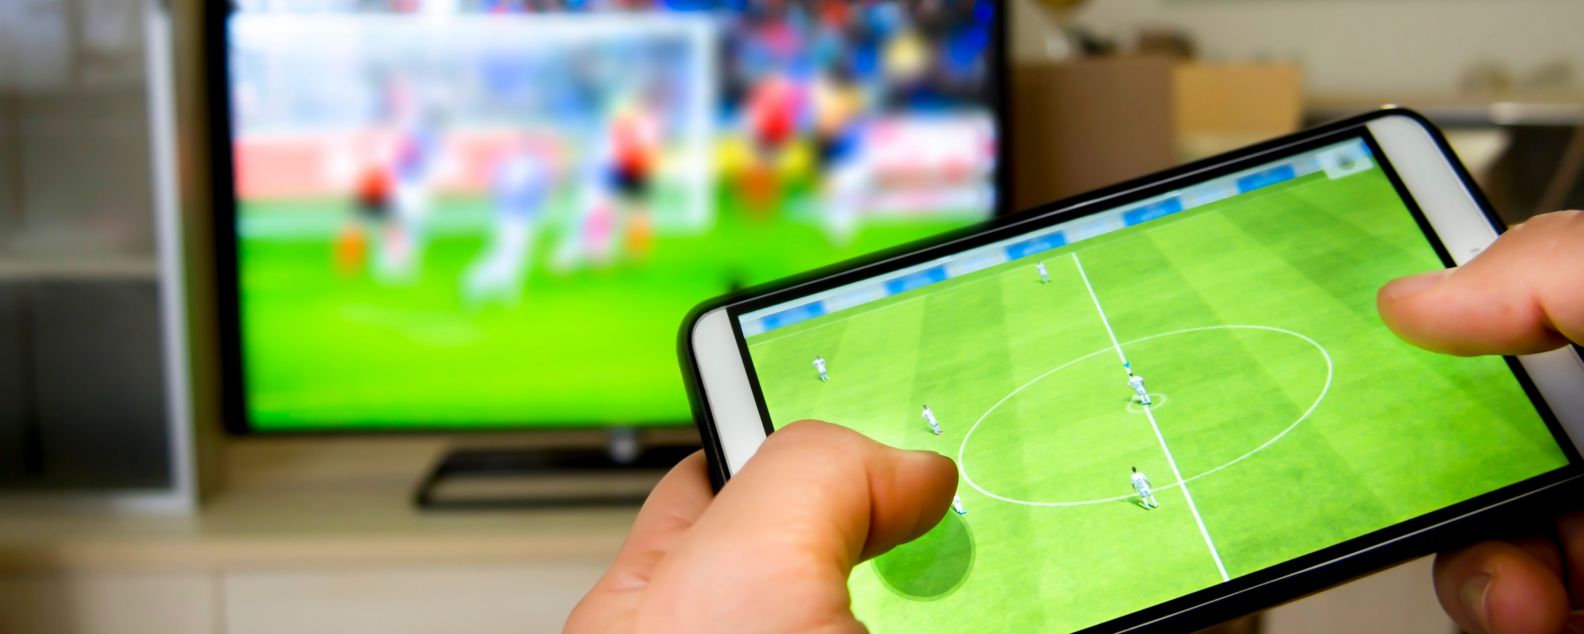 Persona interactuando con un partido de fútbol en un dispositivo móvil mientras ve un partido en la televisión